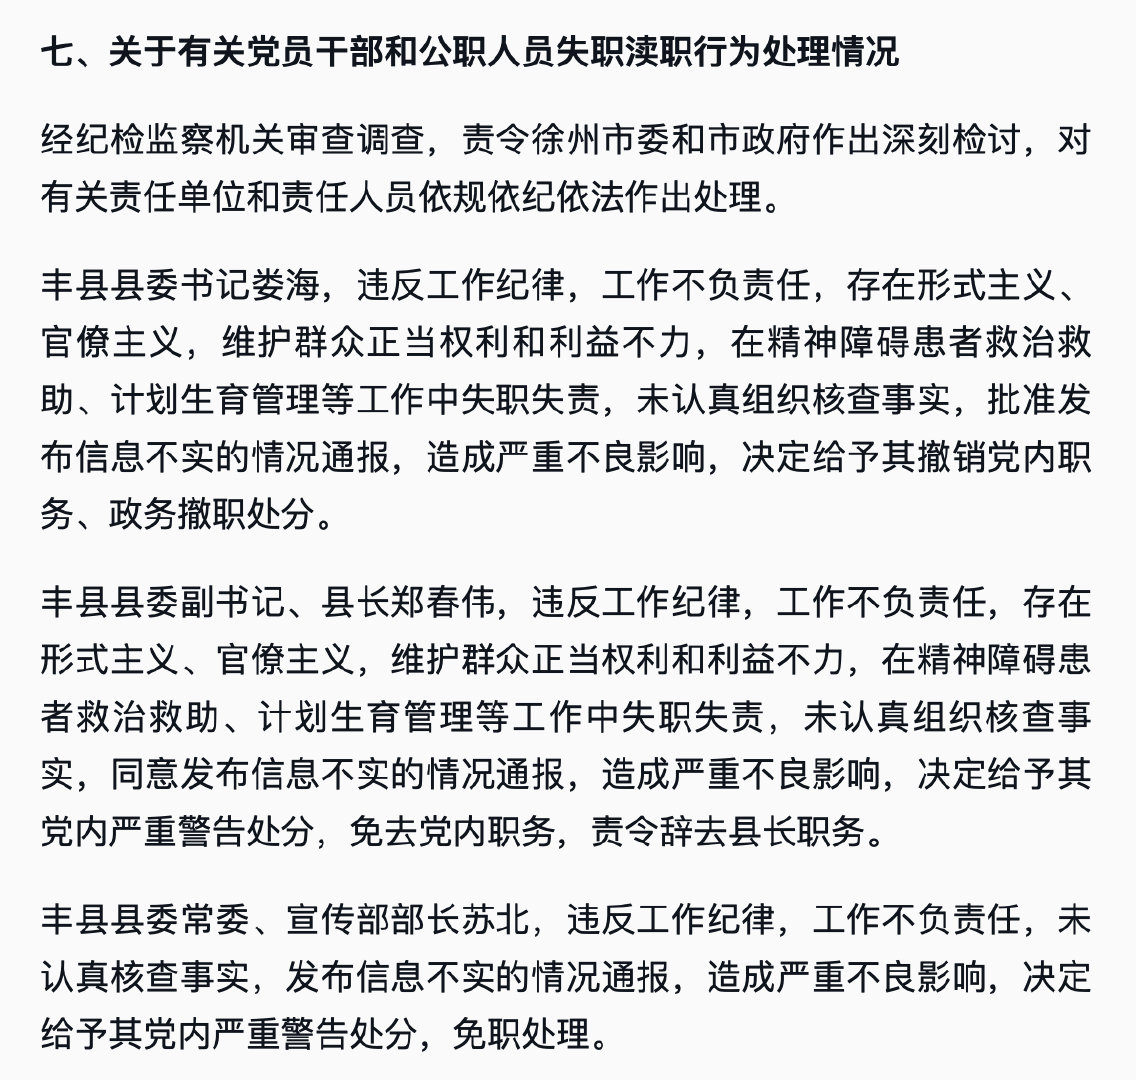 批准、同意、发布不实信息 丰县3官员因此前不实通报被处分